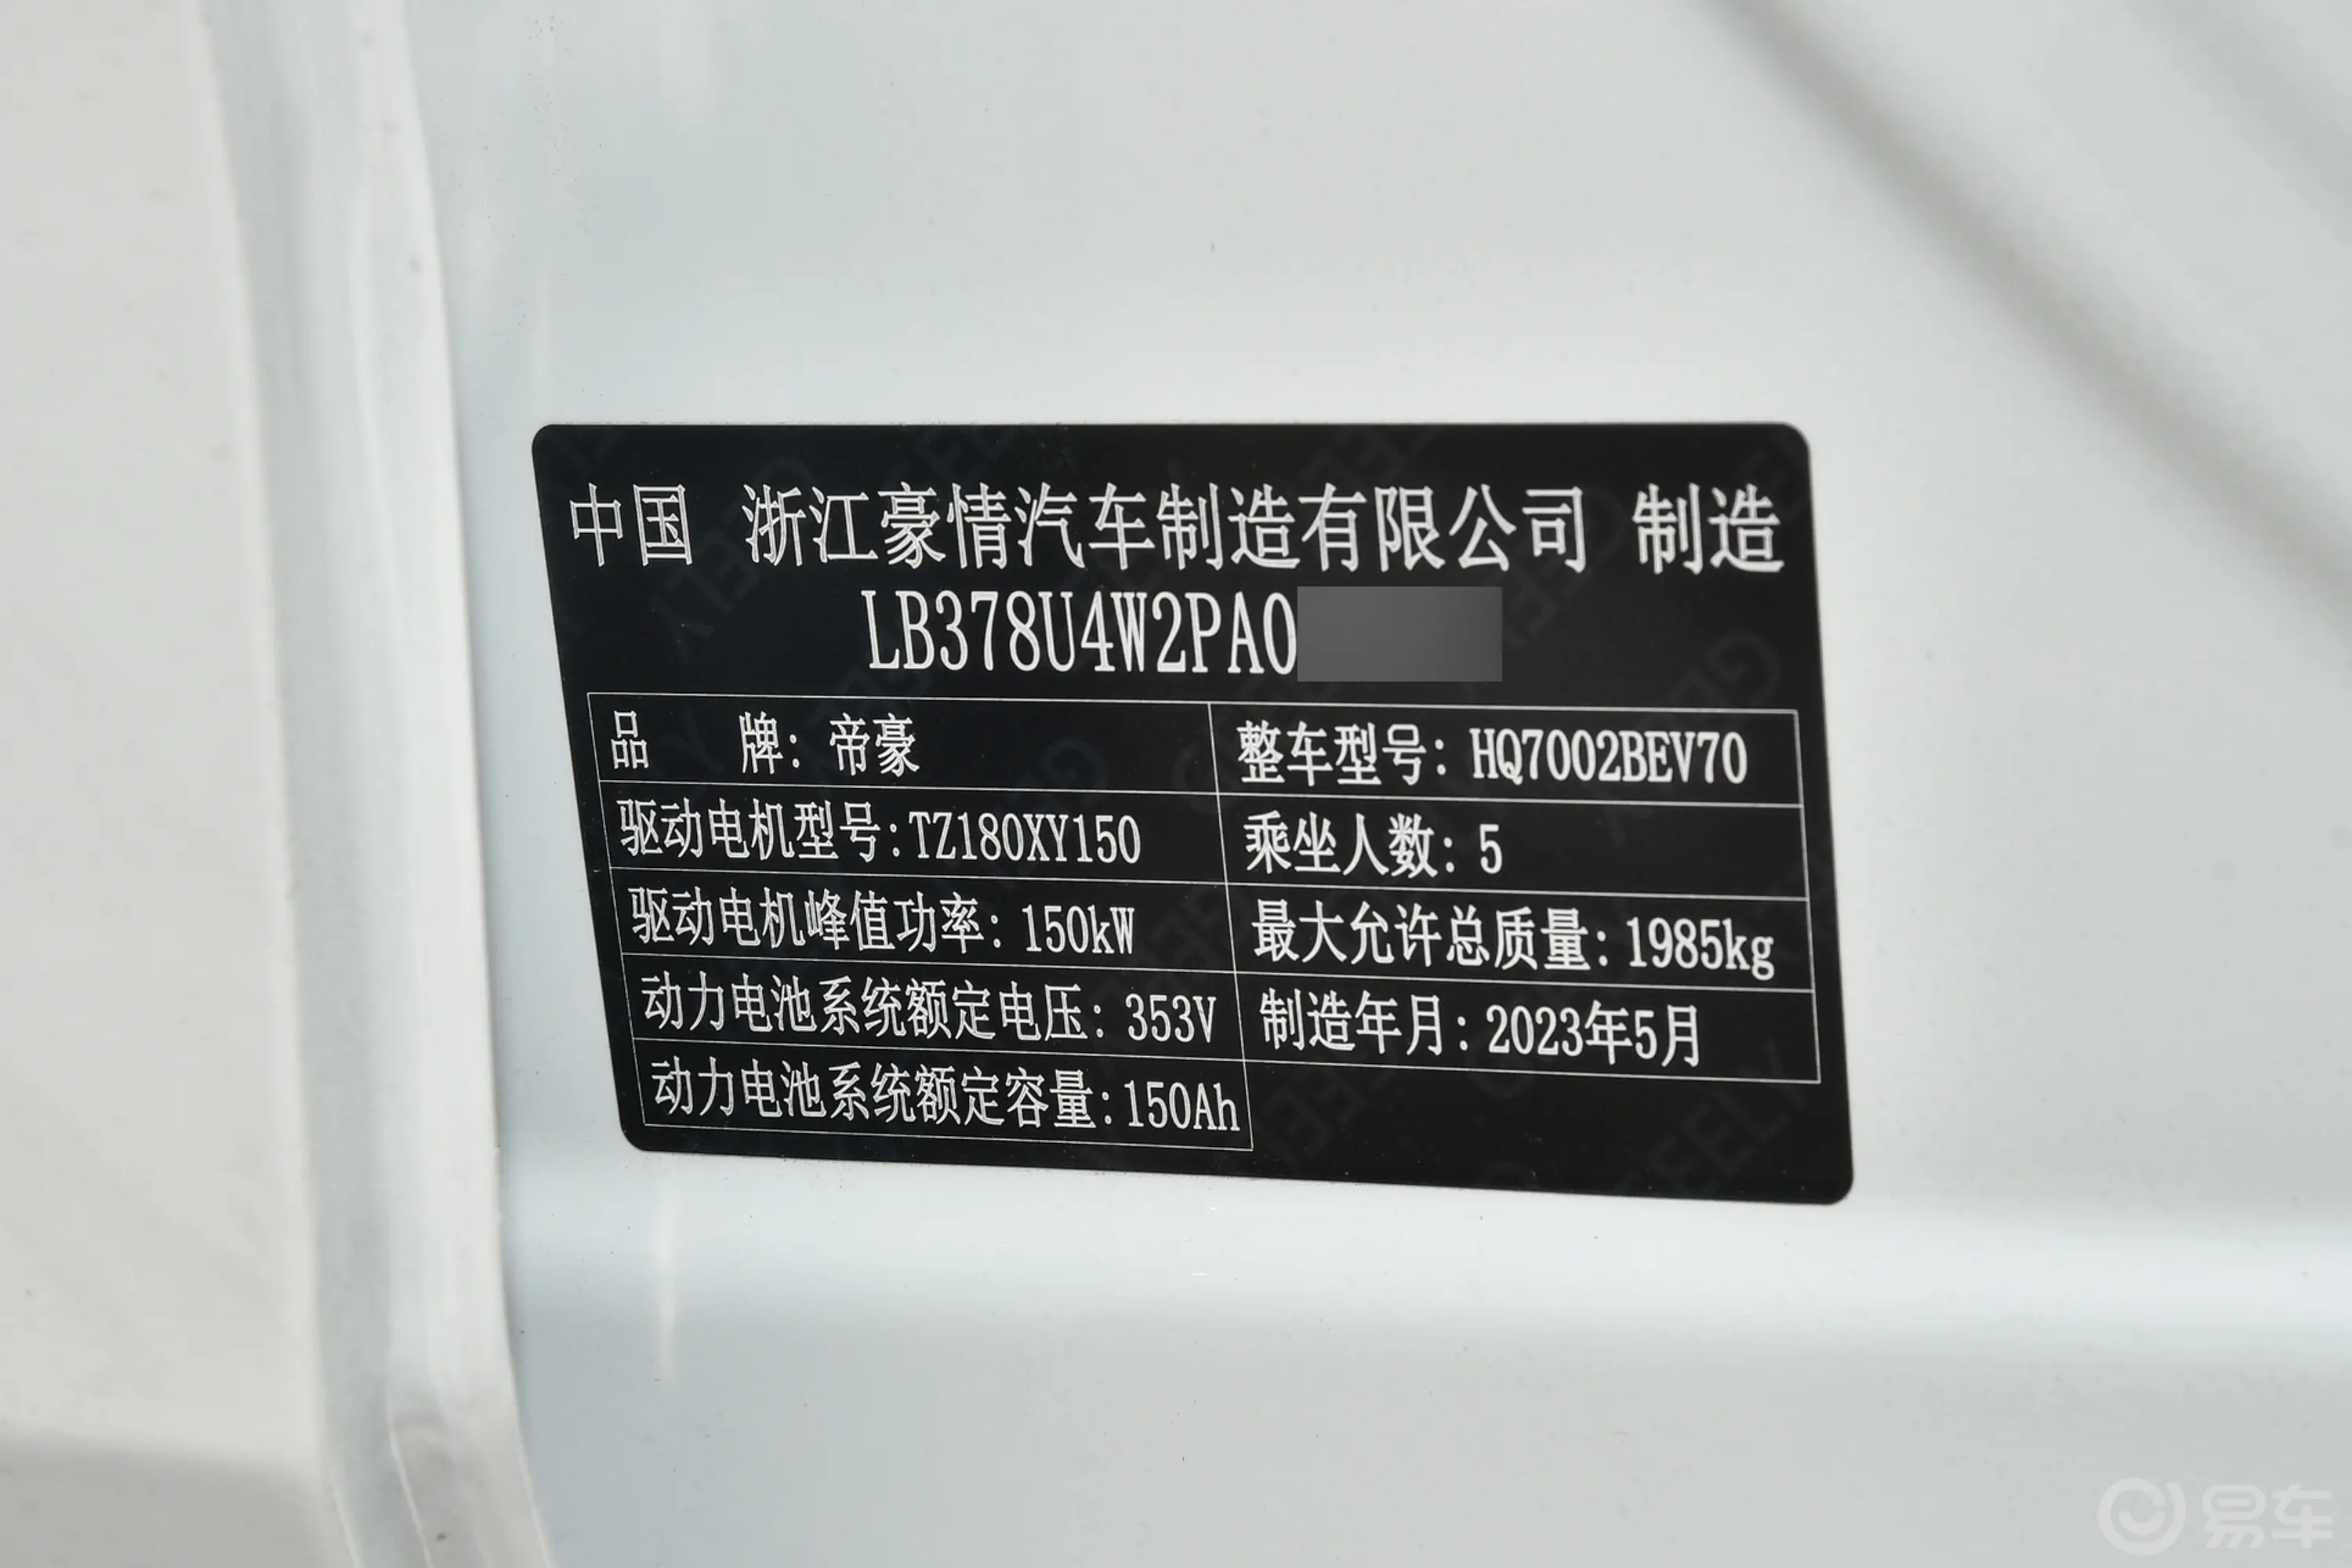 帝豪EVPro 421km 出租版车辆信息铭牌